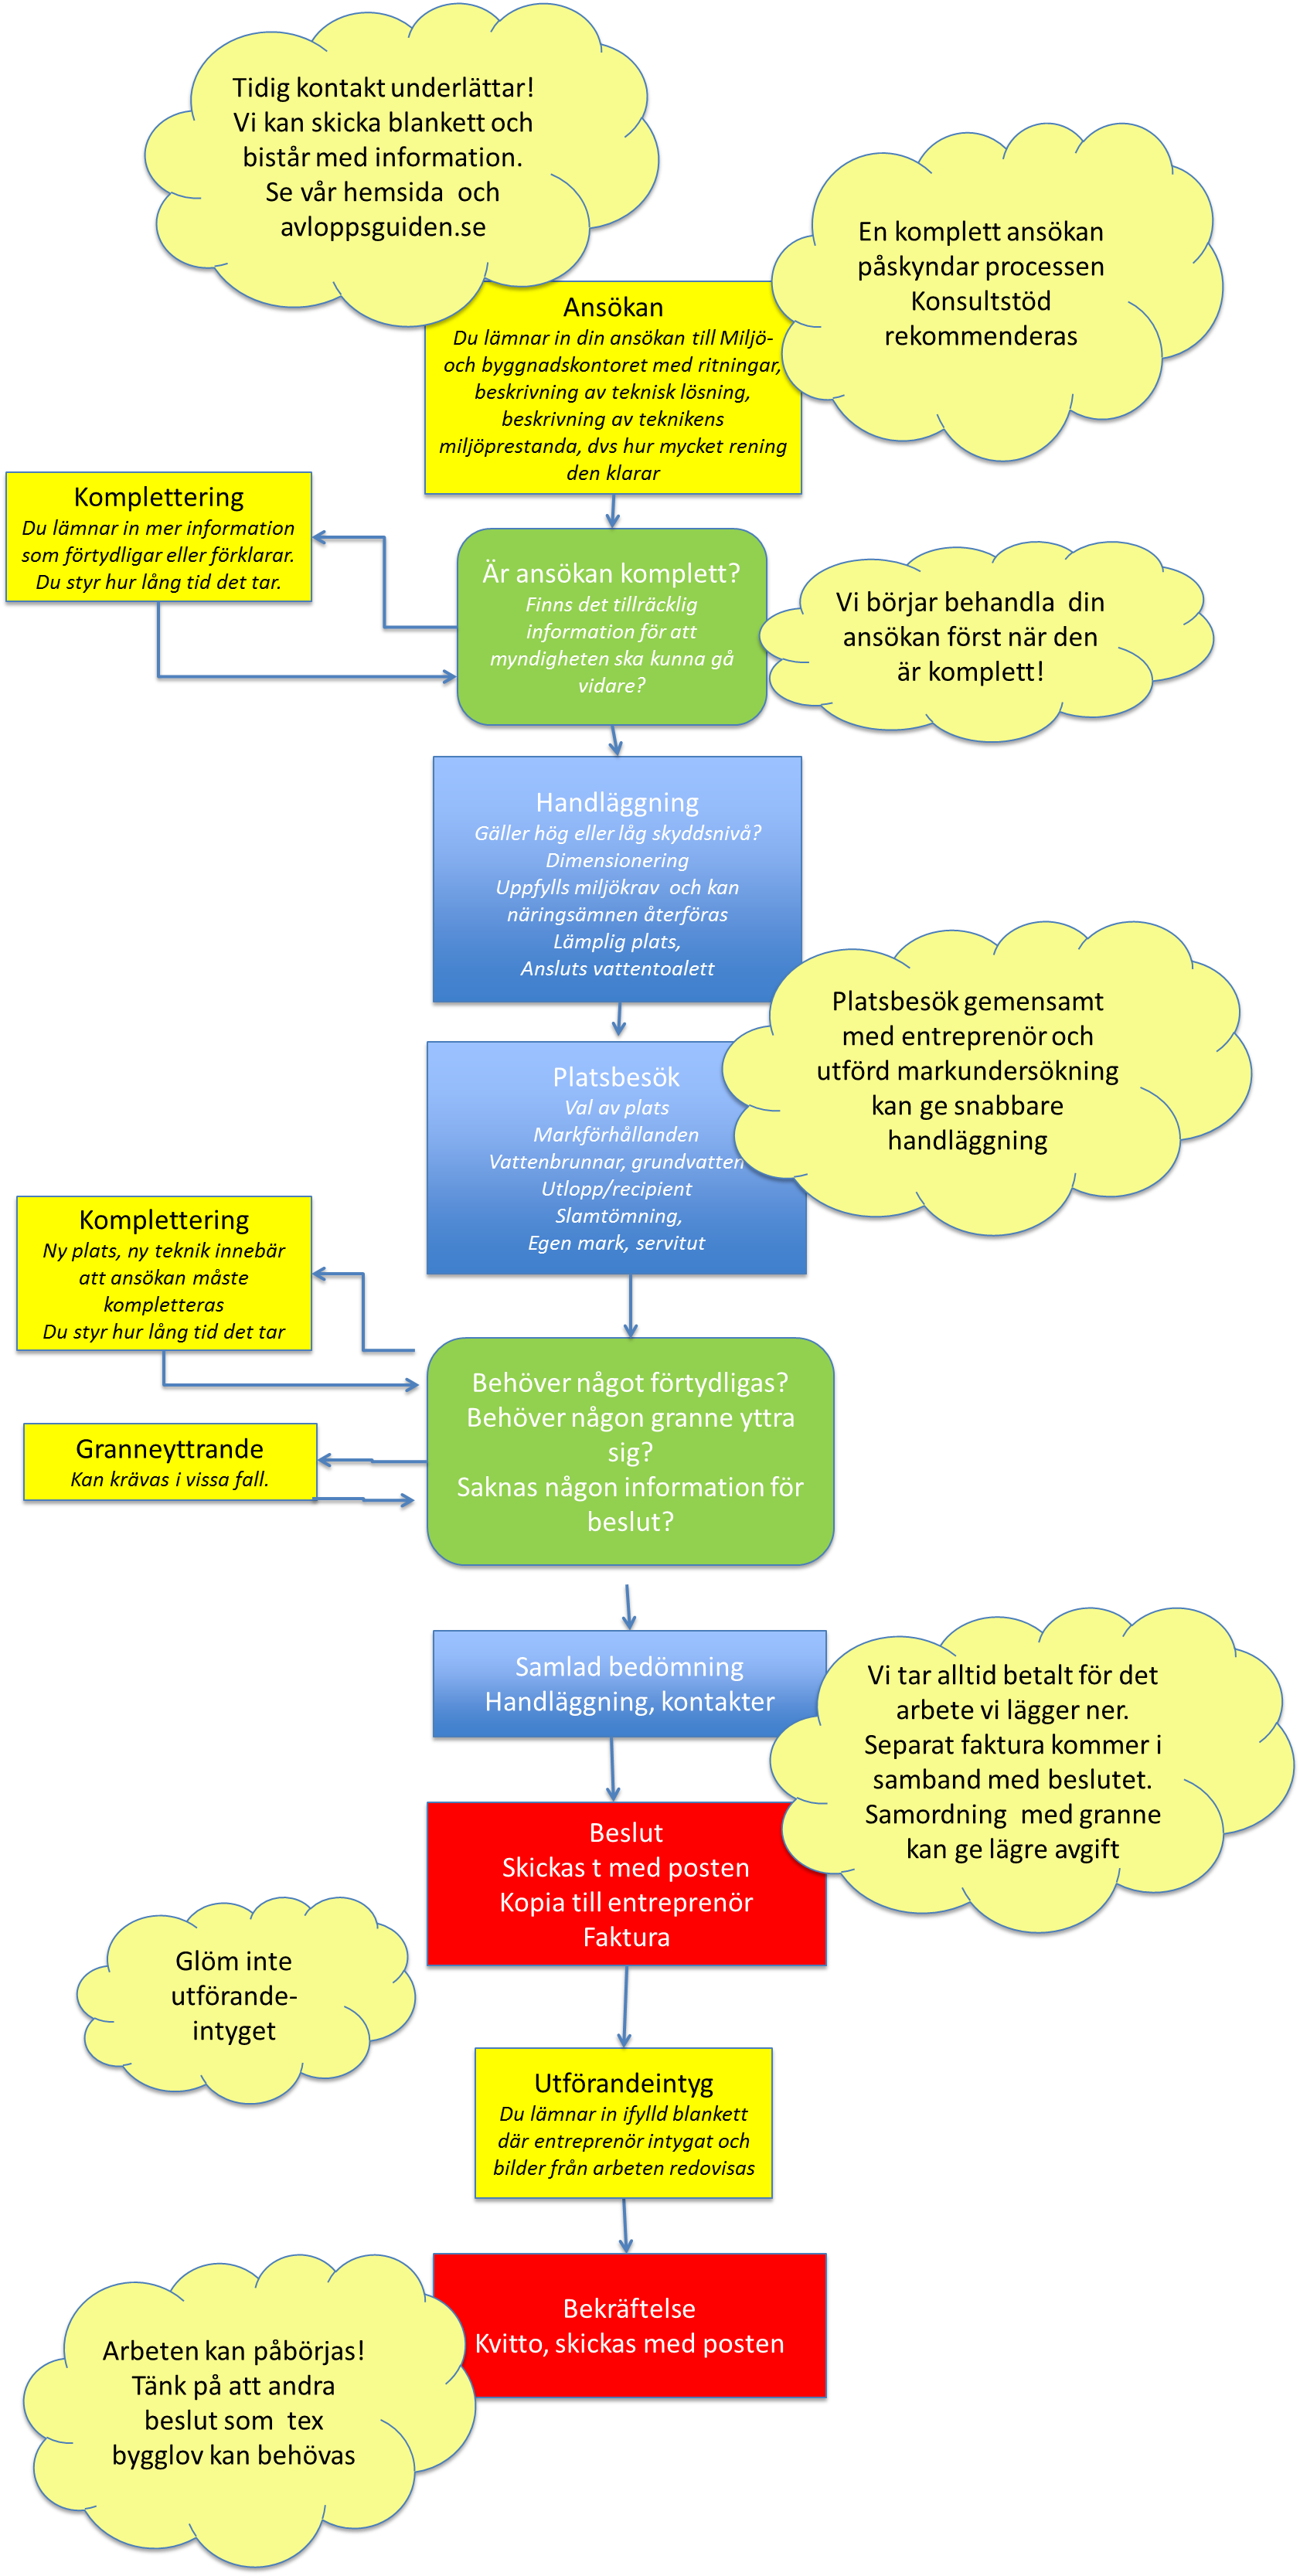 Flödesschema som beskriver processen för hur ett ärende om enskild avloppsanläggning handläggs